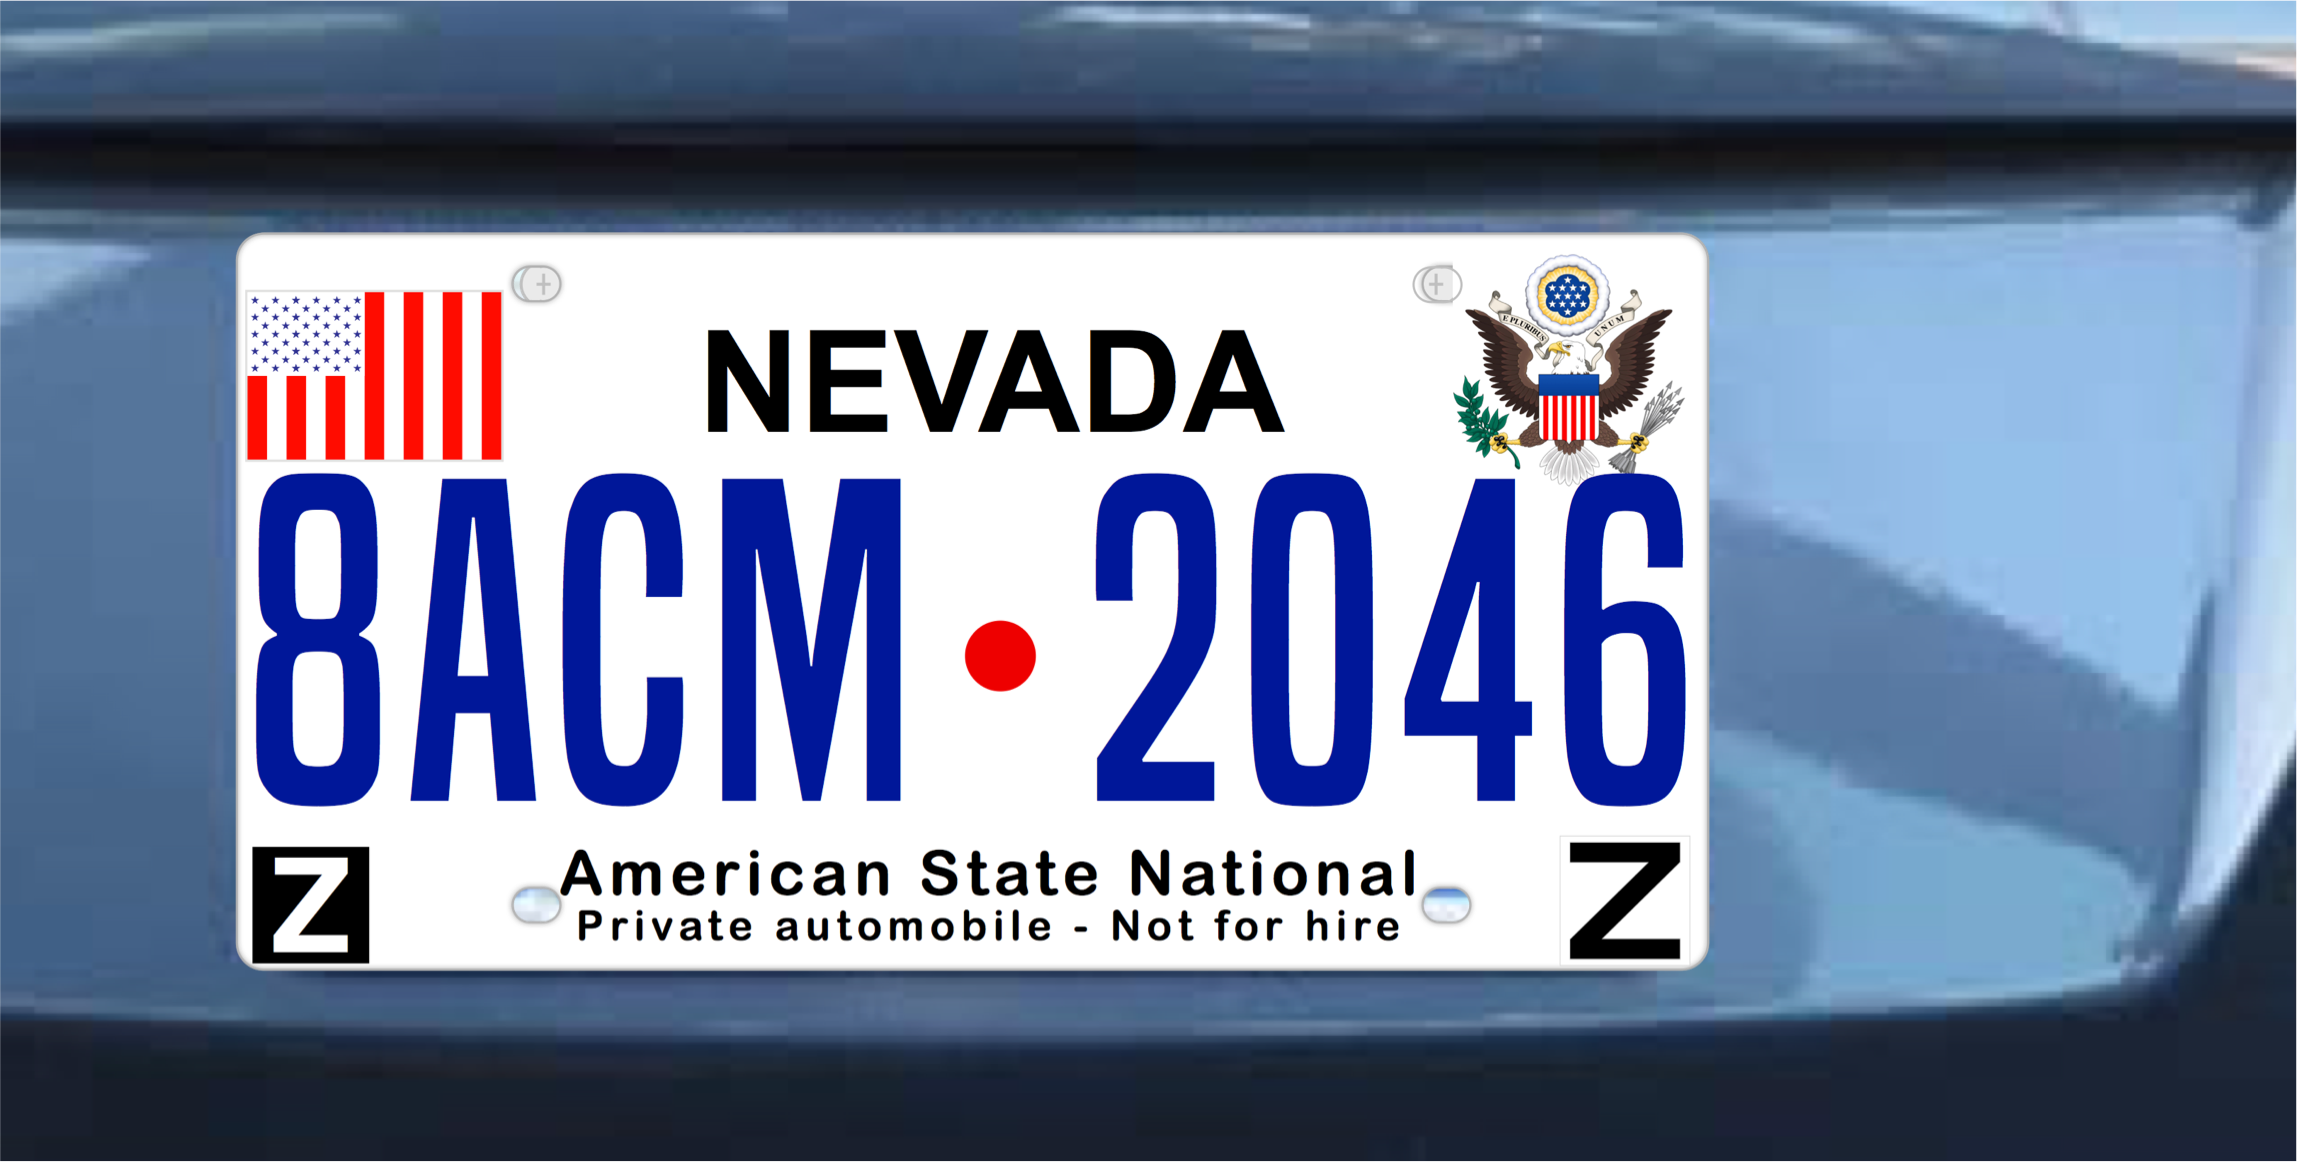 8ACM 2046 car Plate